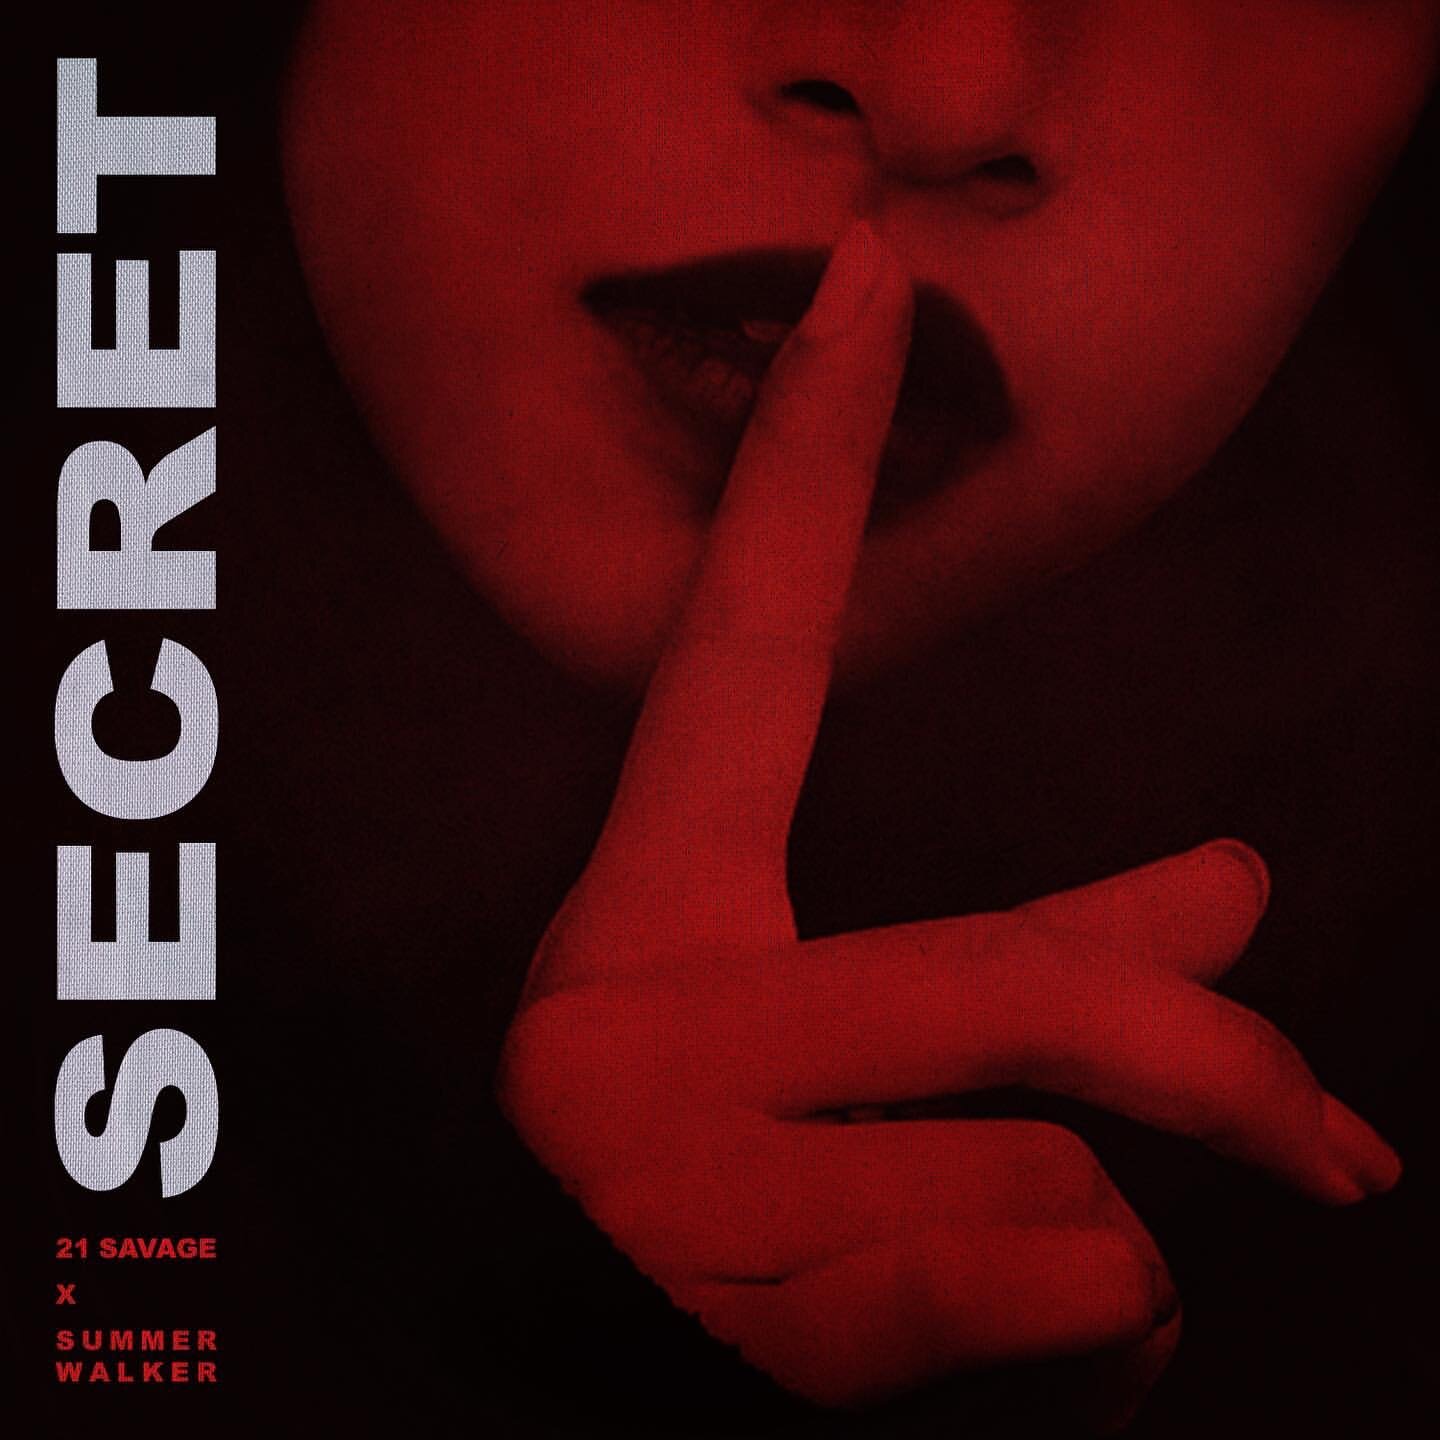 "Secret" 21 Savage ft Summer Walker (Copy)